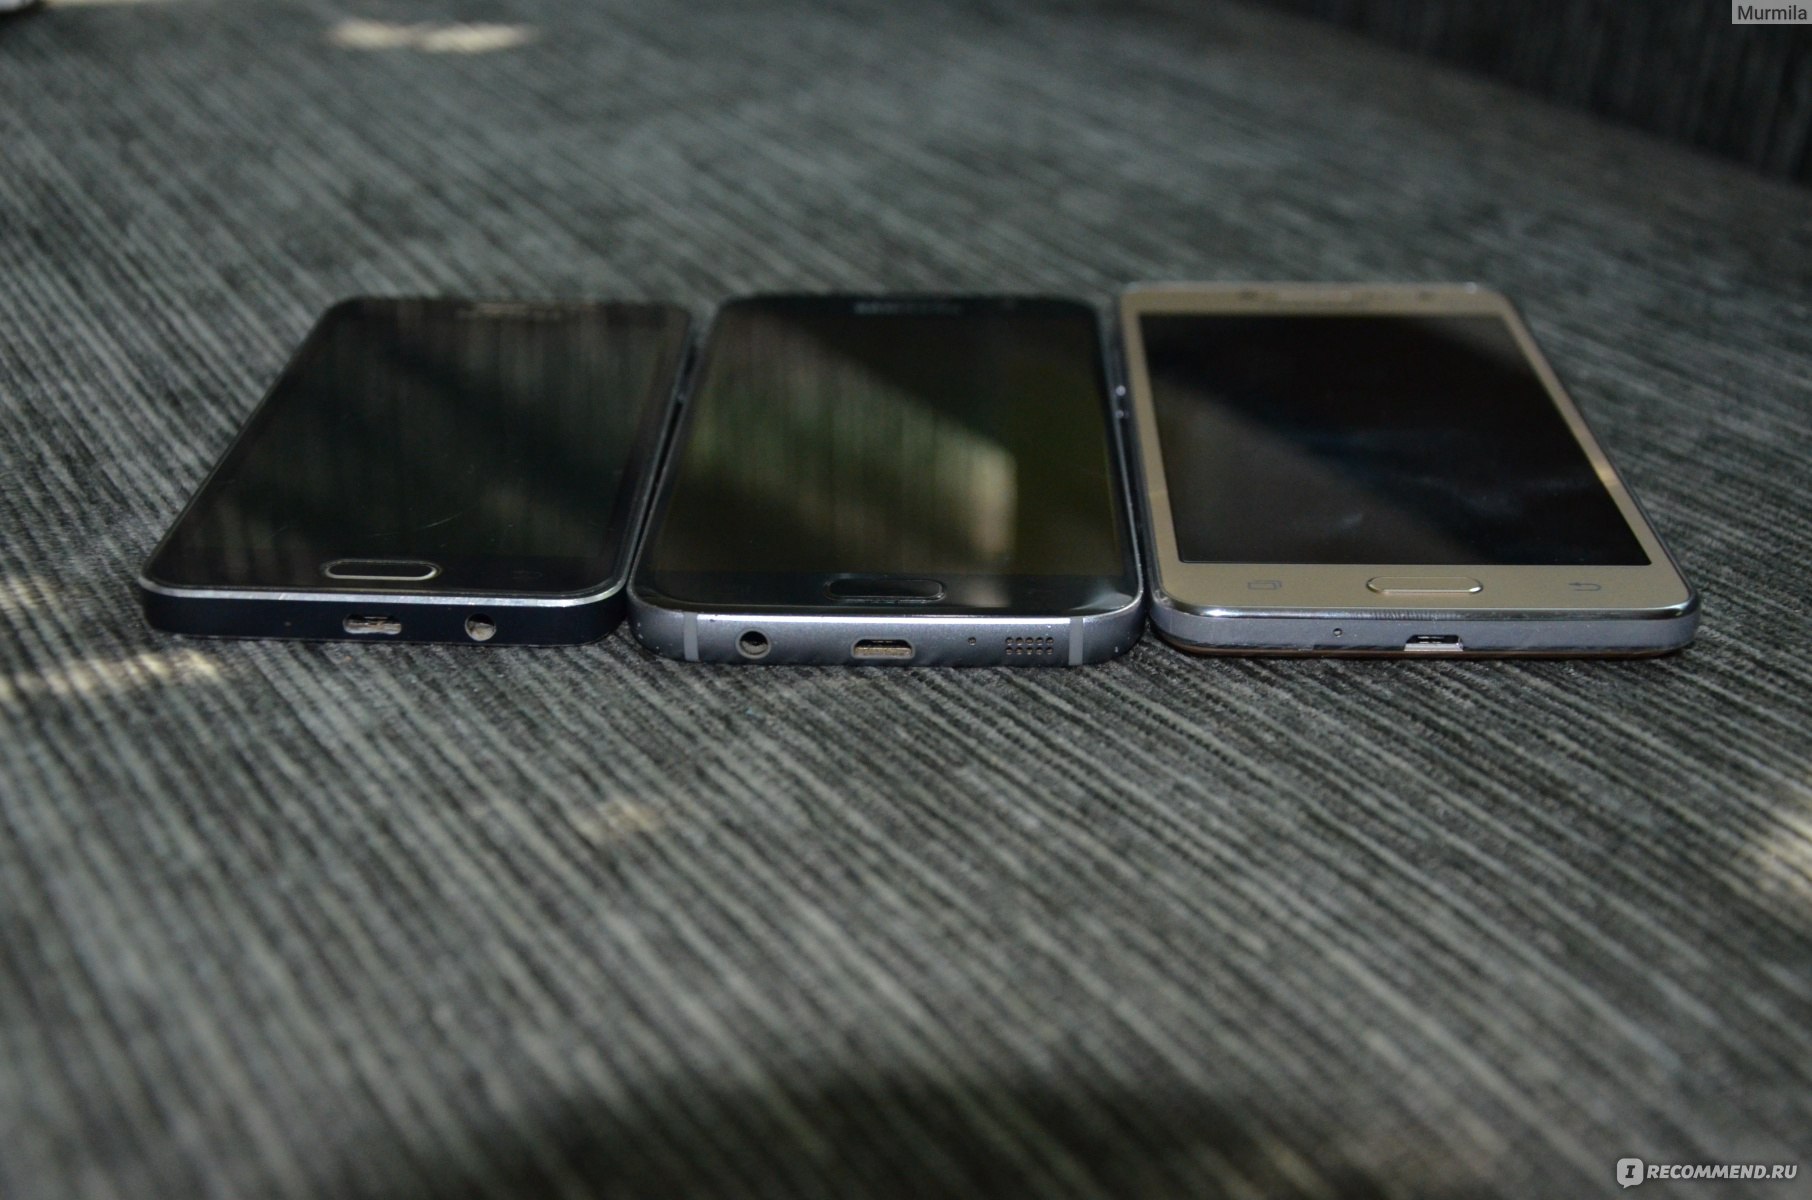 Чехлы для Samsung G361H Galaxy Core Prime Duos (защитные пленки, стекла, накладки)